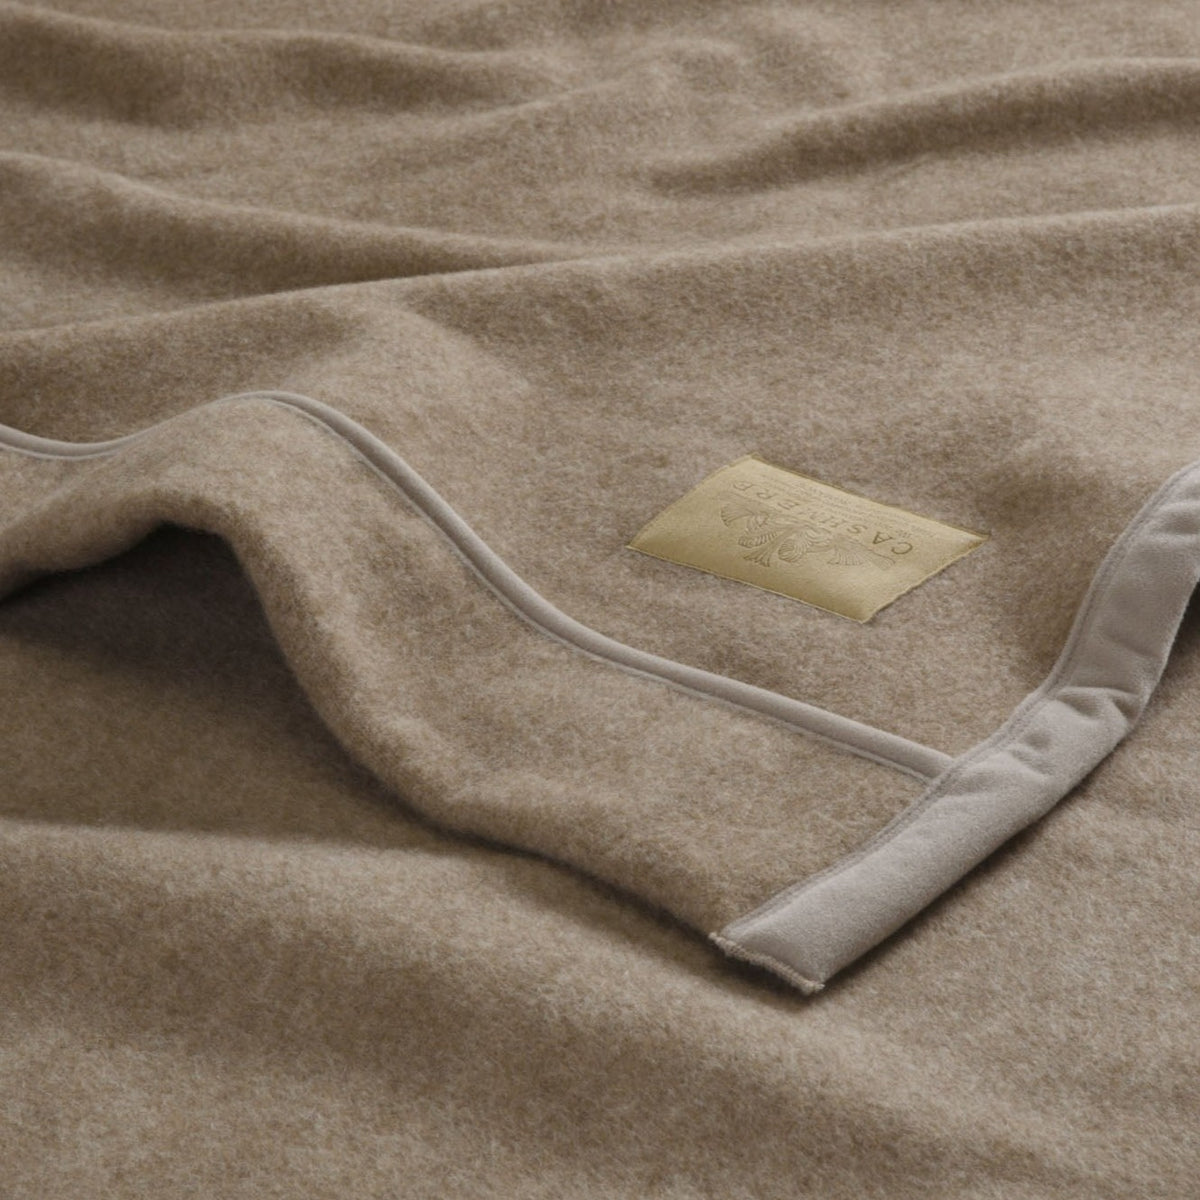 ロマンス小杉 カシミヤ毛布 日本製 シングル 140×200 吸湿放湿性 